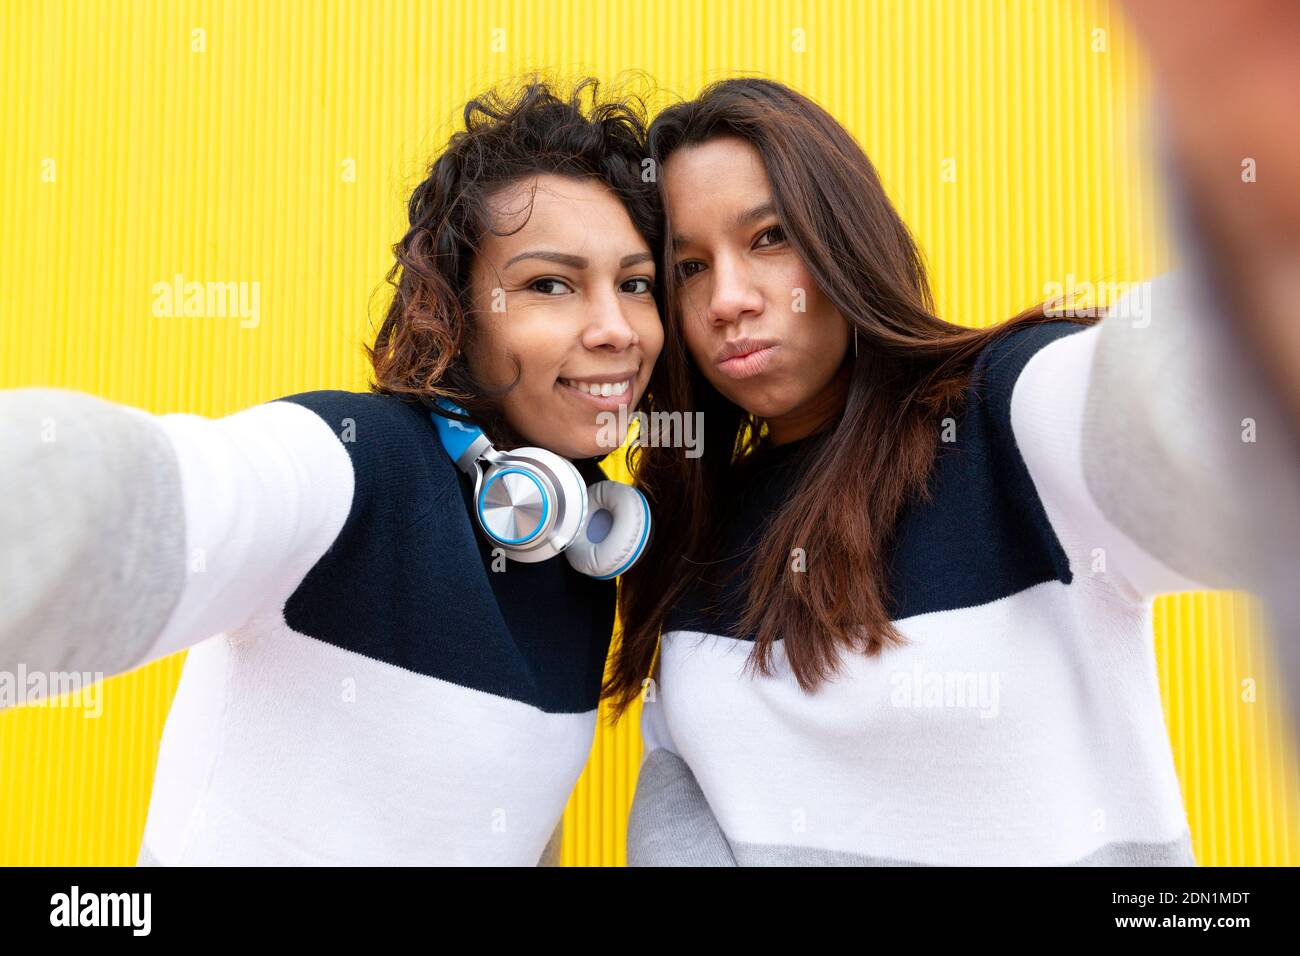 Zwei lustige hispanische Mädchen machen Selfie Foto auf Handy. Sie sind auf einem gelben Hintergrund isoliert. Konzept der Freundschaft. Stockfoto